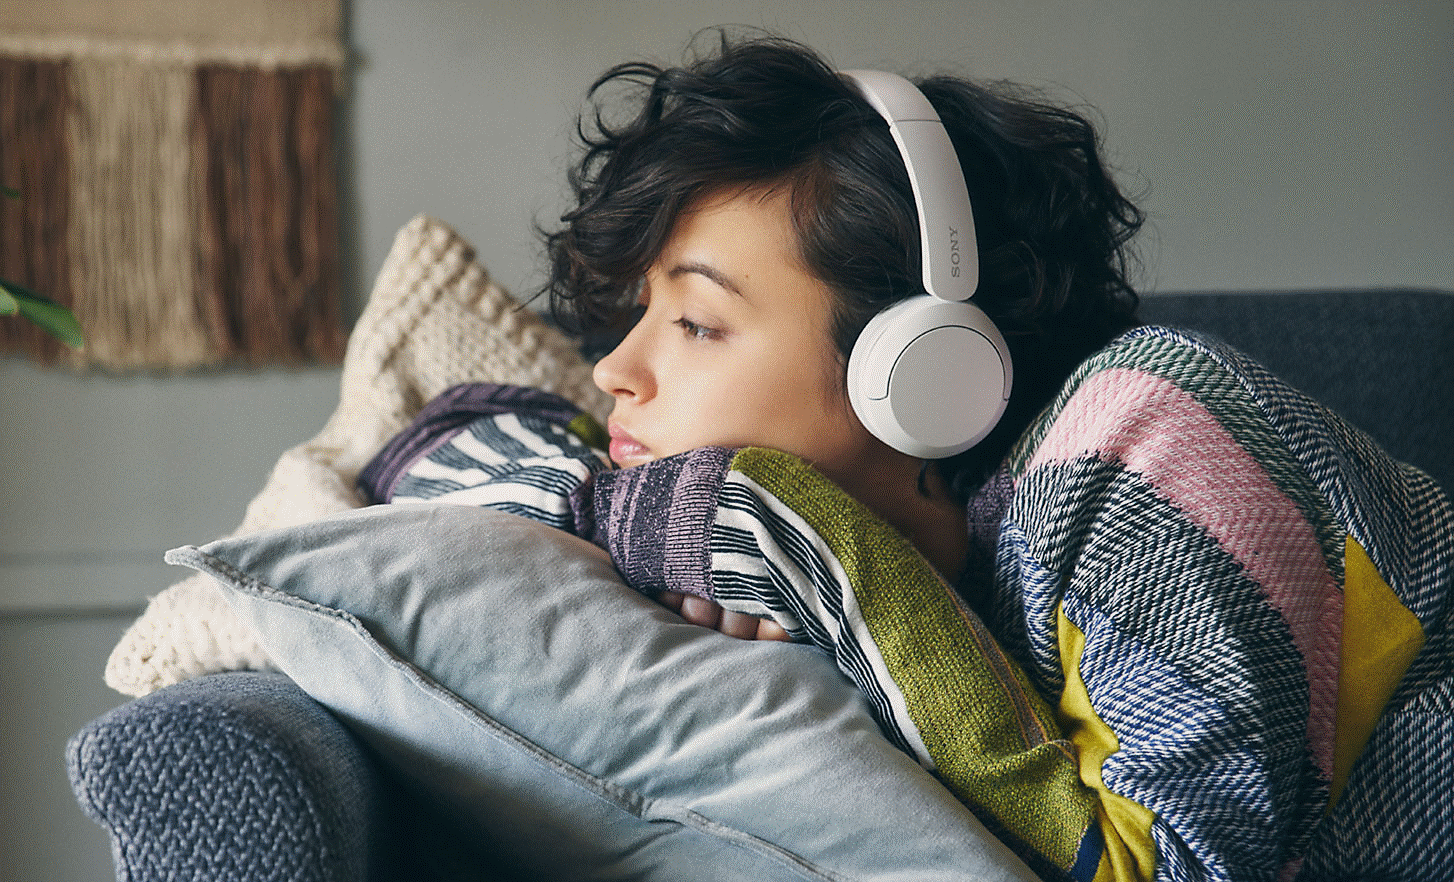 Kép: szürke kanapén fekvő, fehér színű Sony WH-CH520 fejhallgatót viselő nő